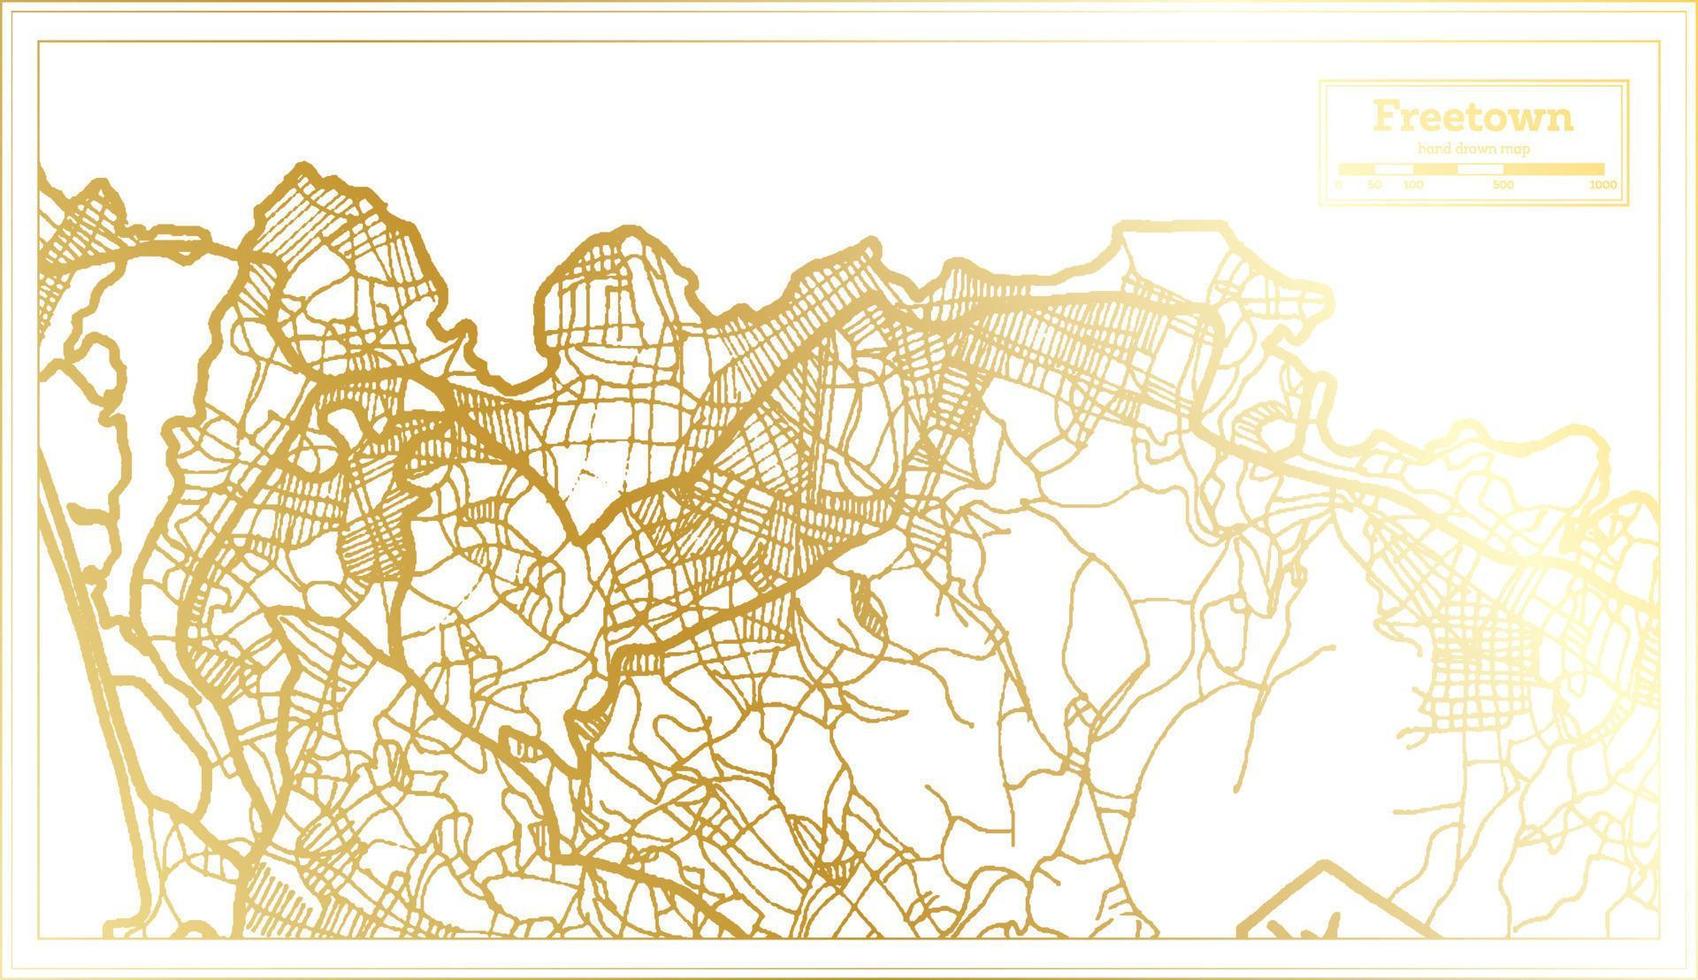 freetown sierra leone stadtplan im retro-stil in goldener farbe. Übersichtskarte. vektor